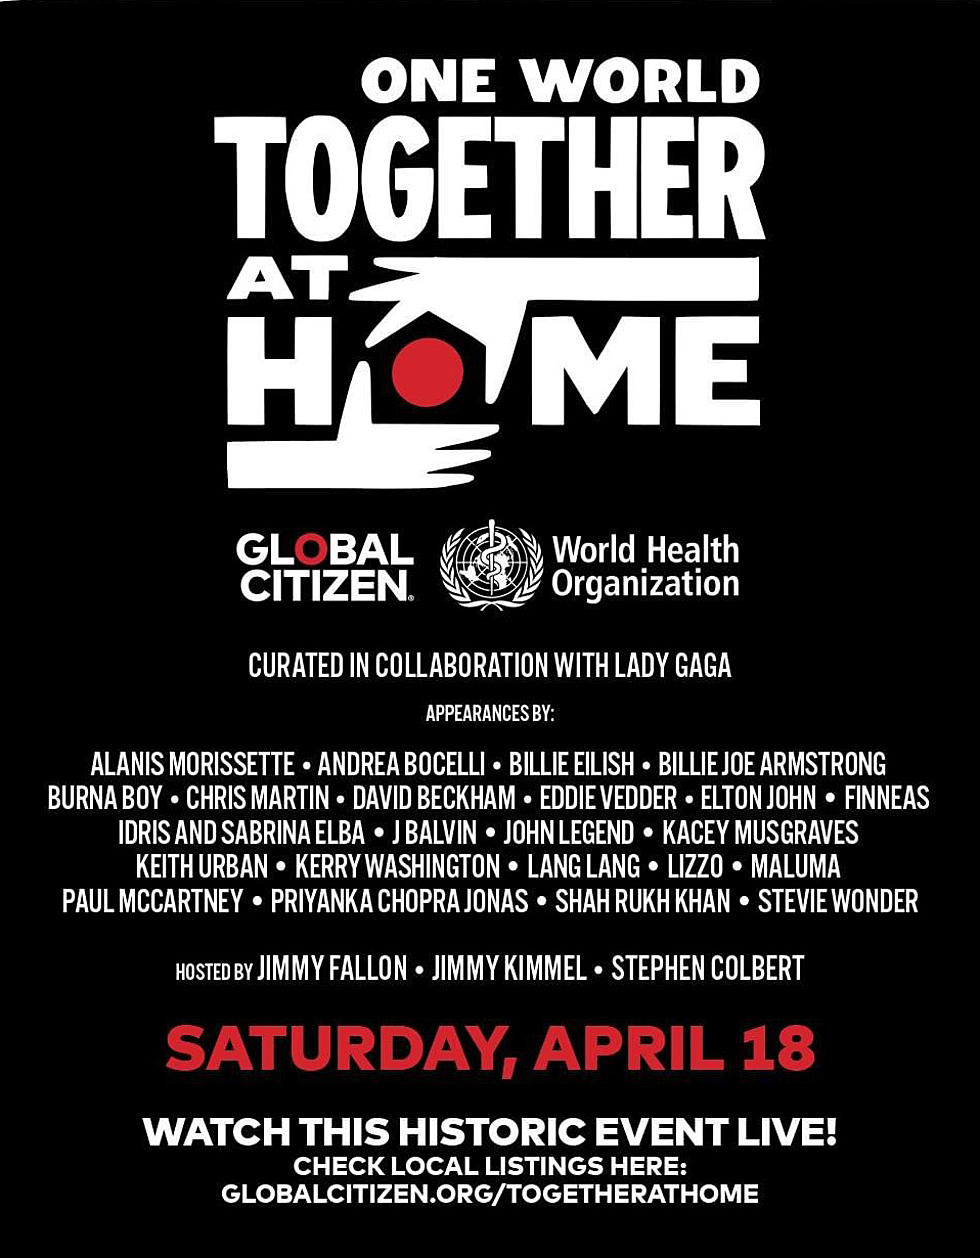 Paul McCartney, Elton John, Eddie Vedder & more appearing on Global Citizen special